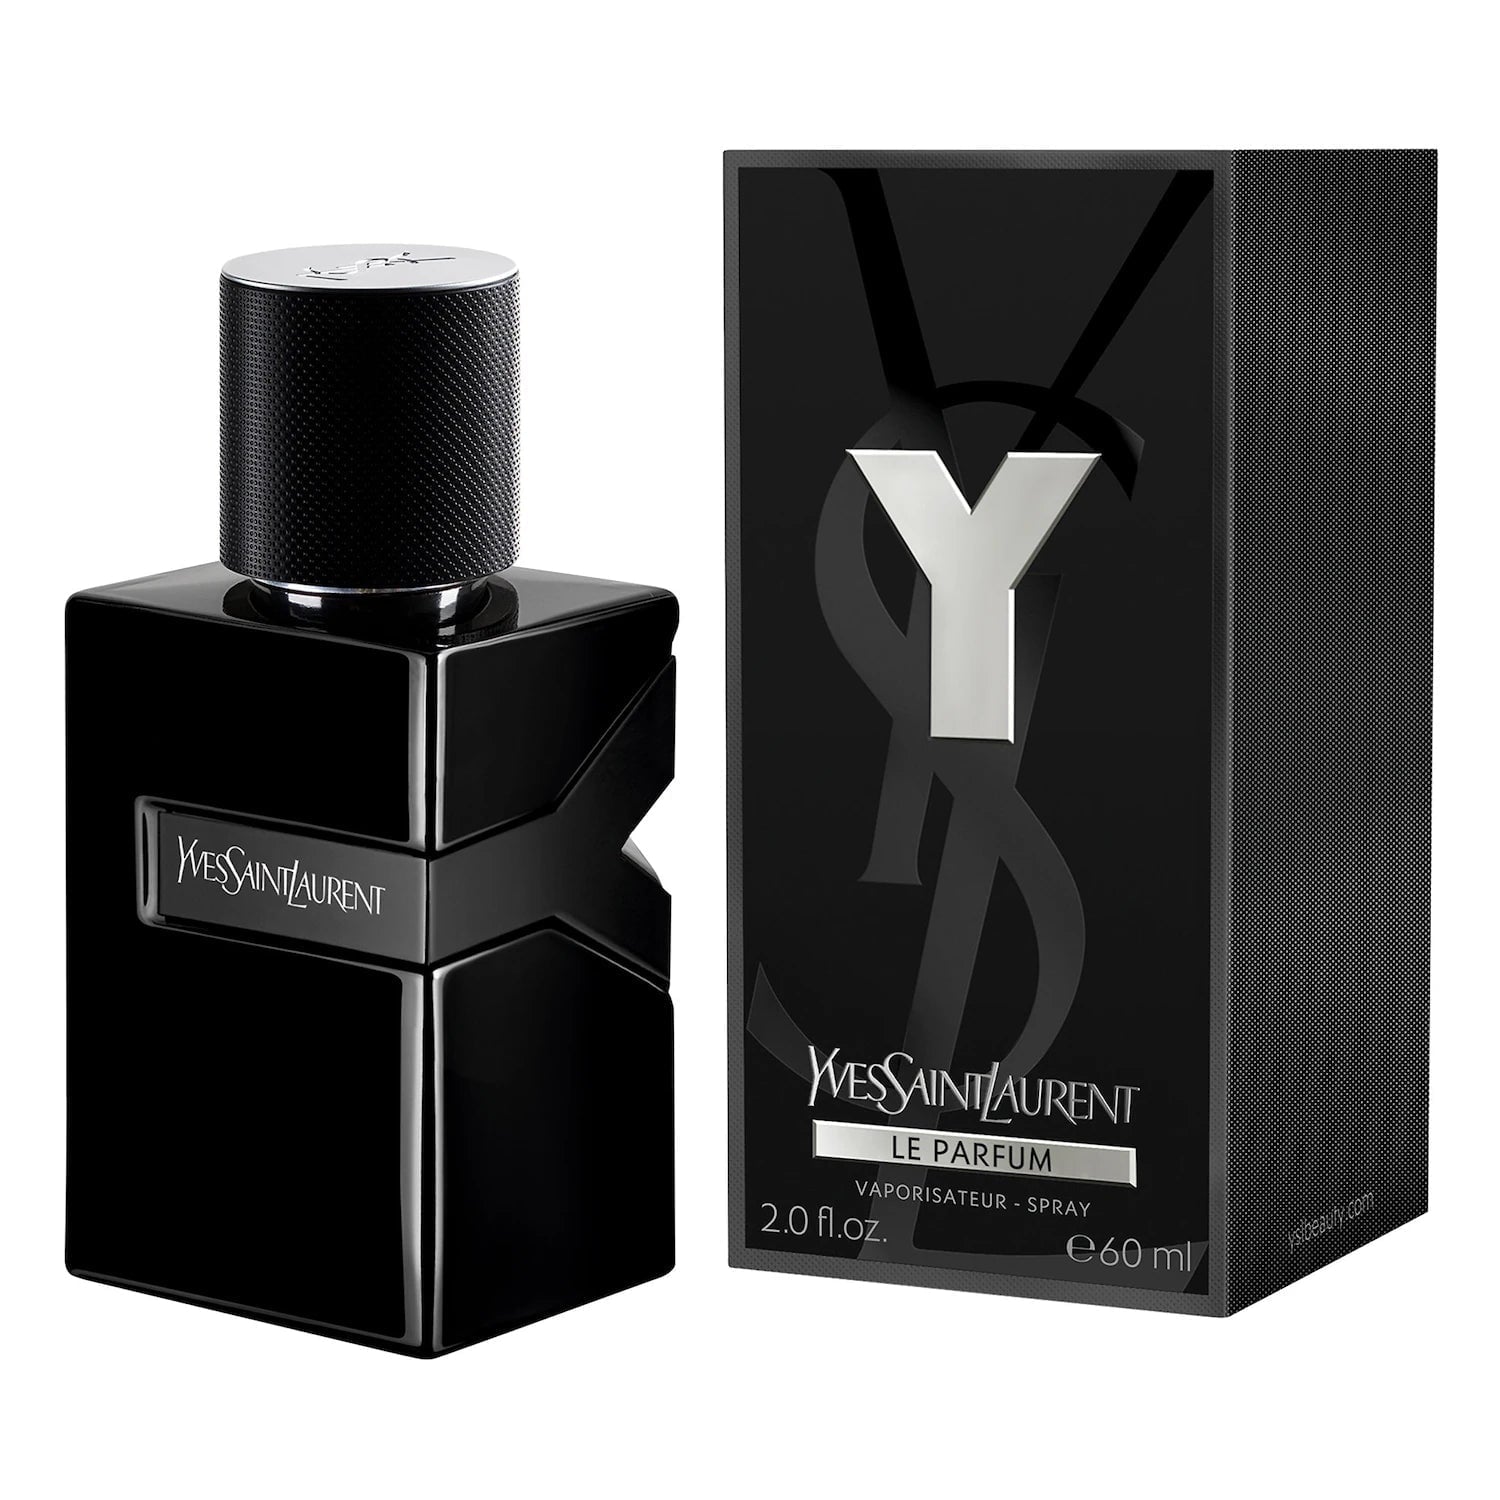 Y Eau Le Parfum Spray for Men by Yves Saint Laurent, Product image 2